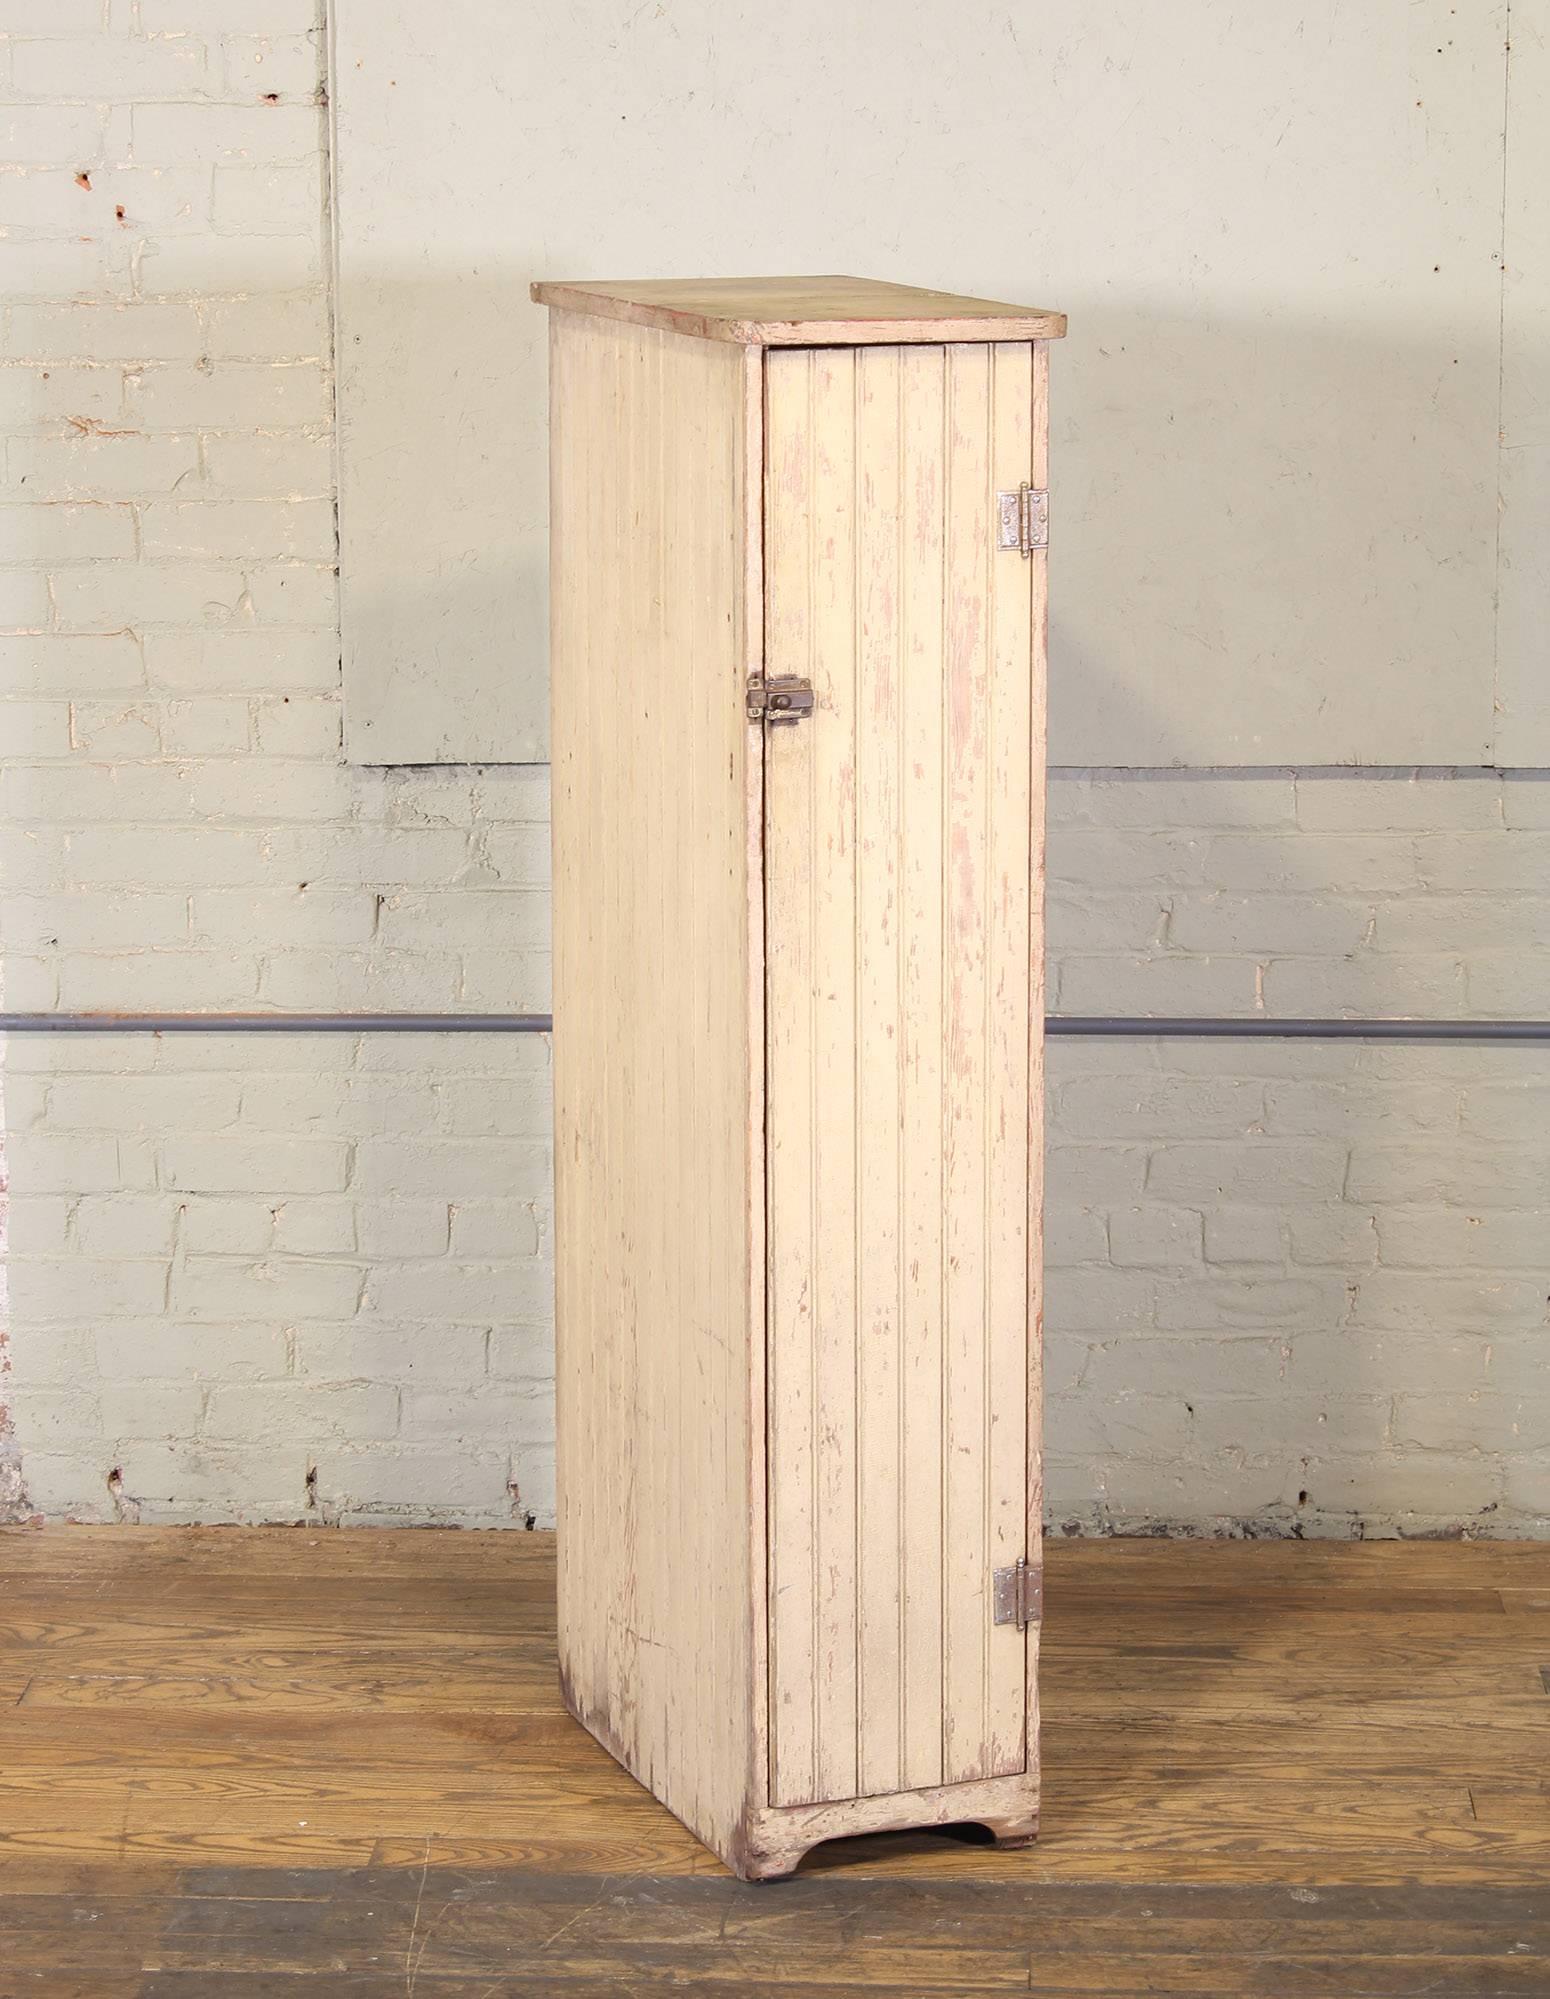 20th Century Vintage Distressed Wooden Storage Locker